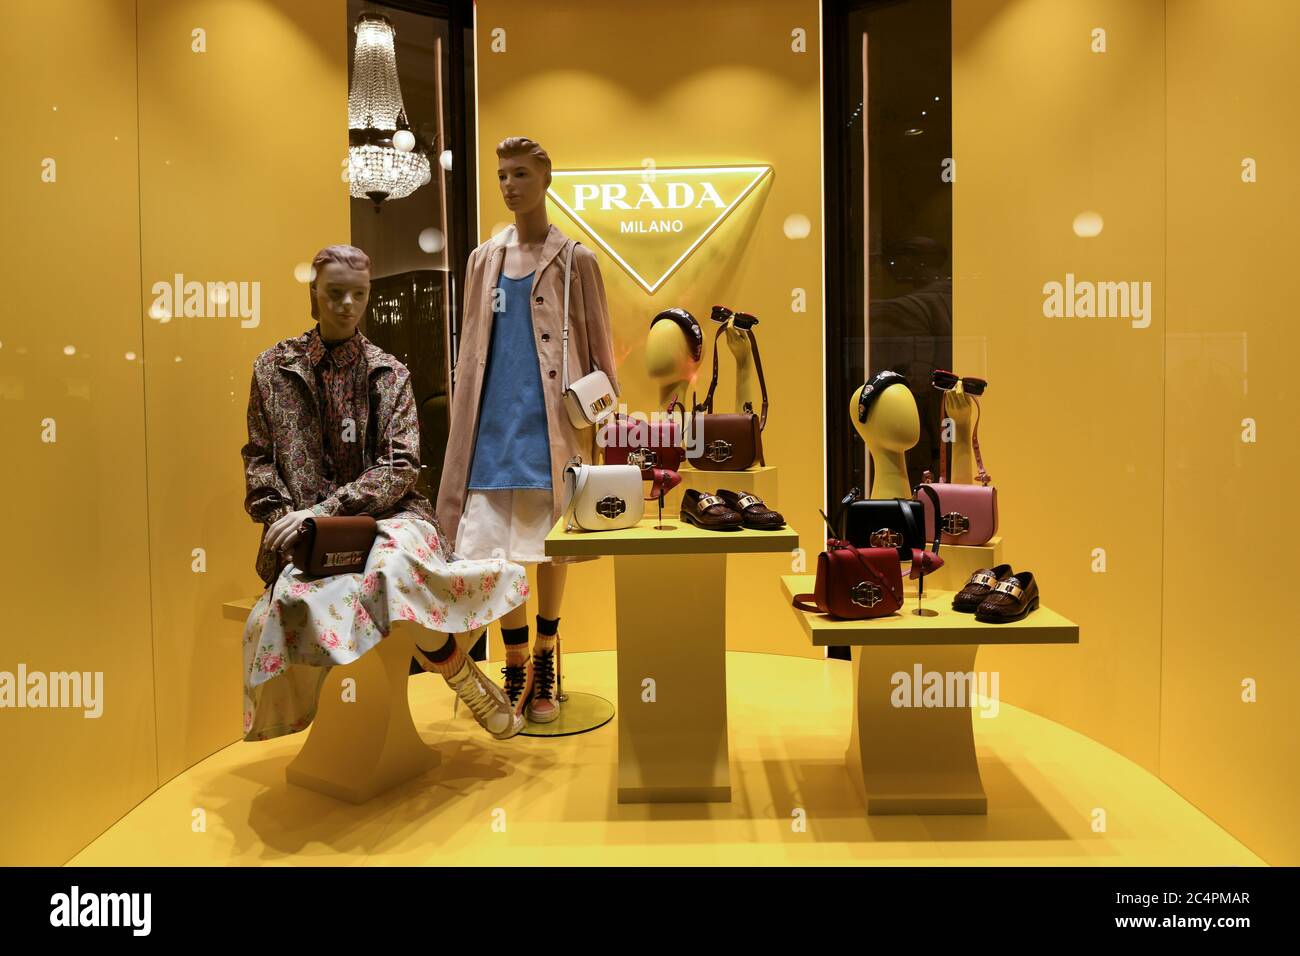 Mailand, Italien - 11. Januar 2020: Prada Damen Outfits und Accessoires  Schaufenster Stockfotografie - Alamy